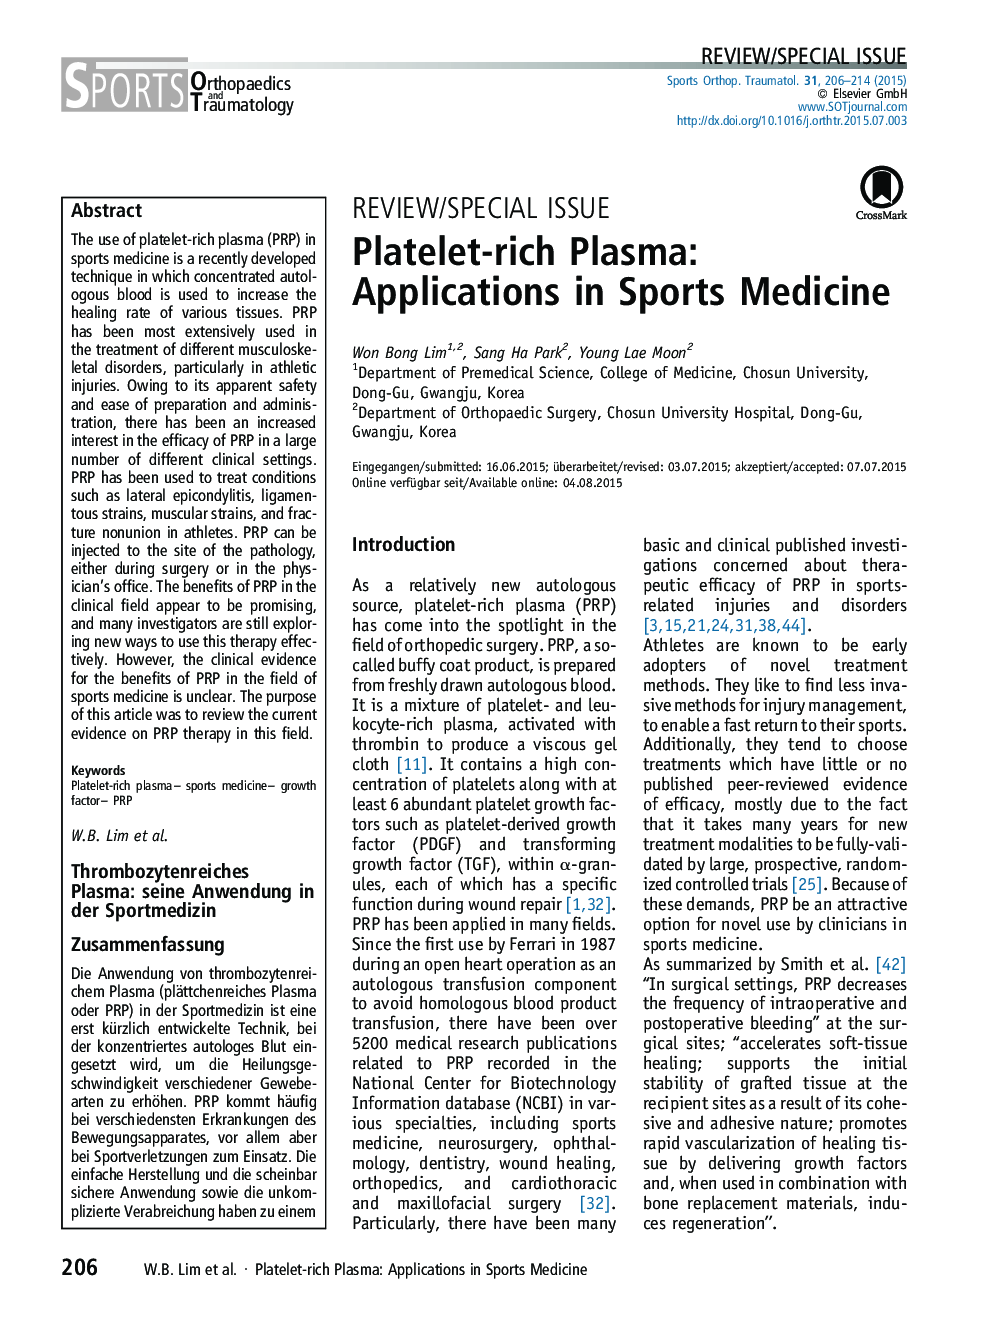 پلاسمای غنی از پلاکت: برنامه های کاربردی در پزشکی ورزشی